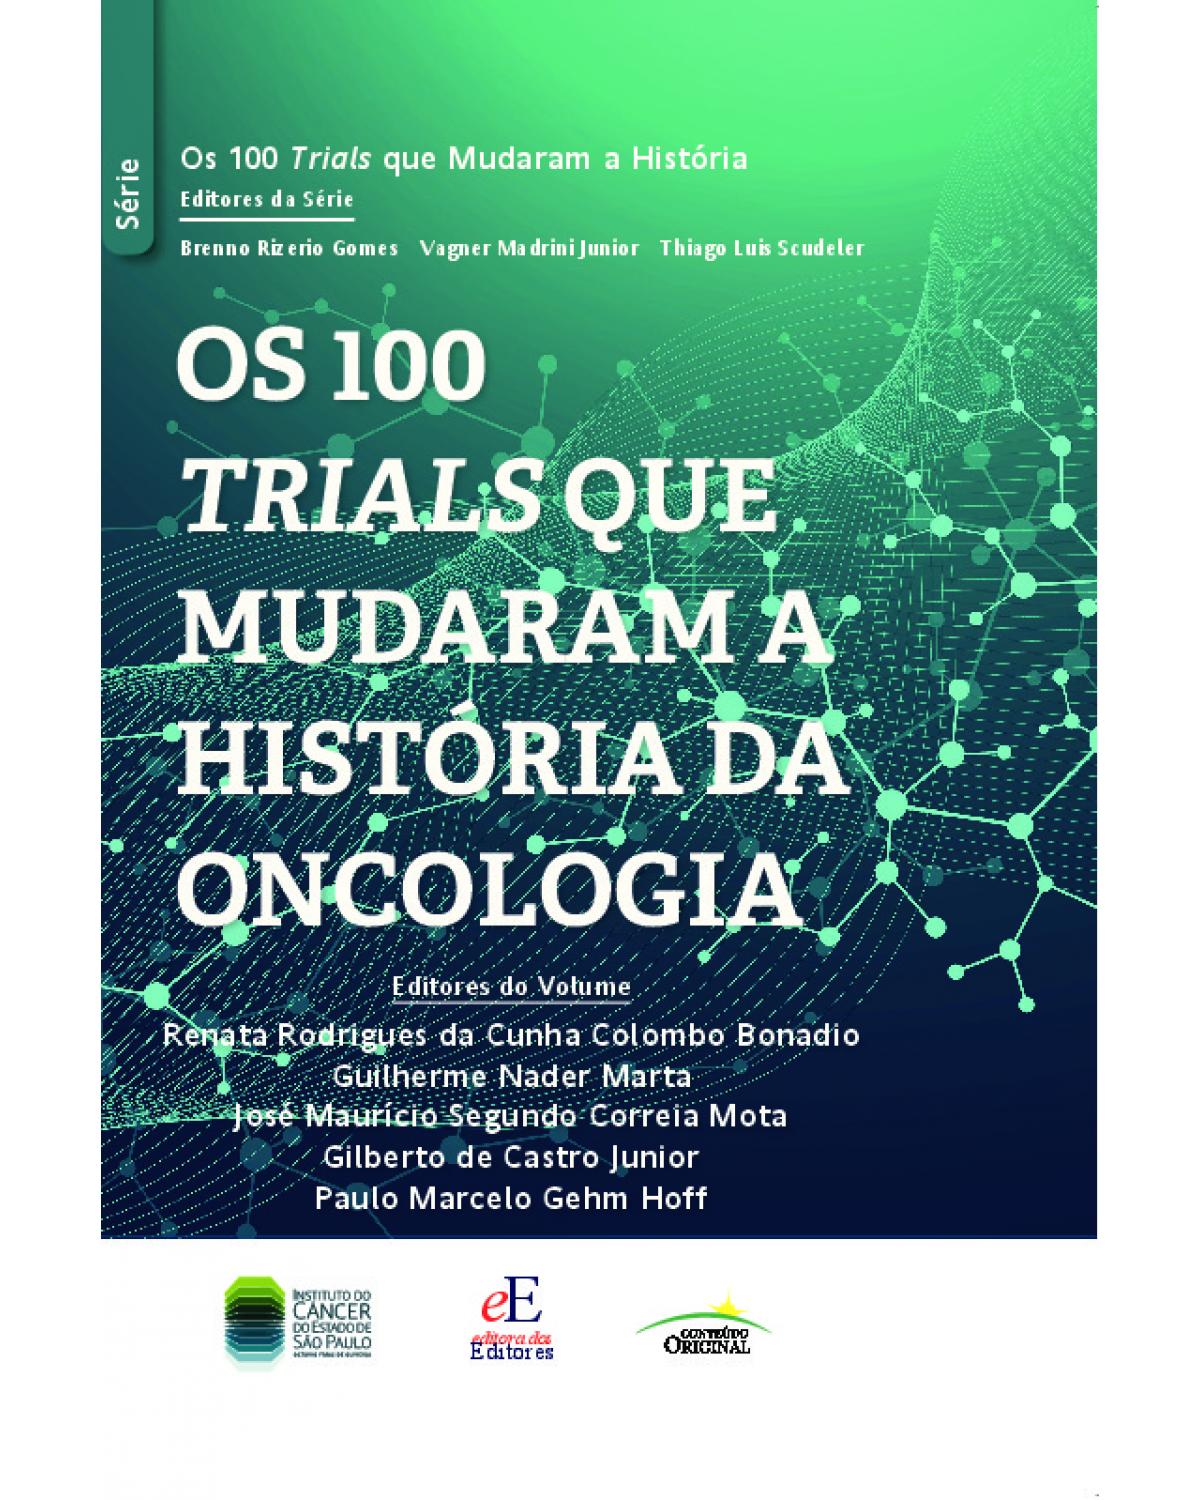 Os 100 trials que mudaram a história da oncologia - 1ª Edição | 2021